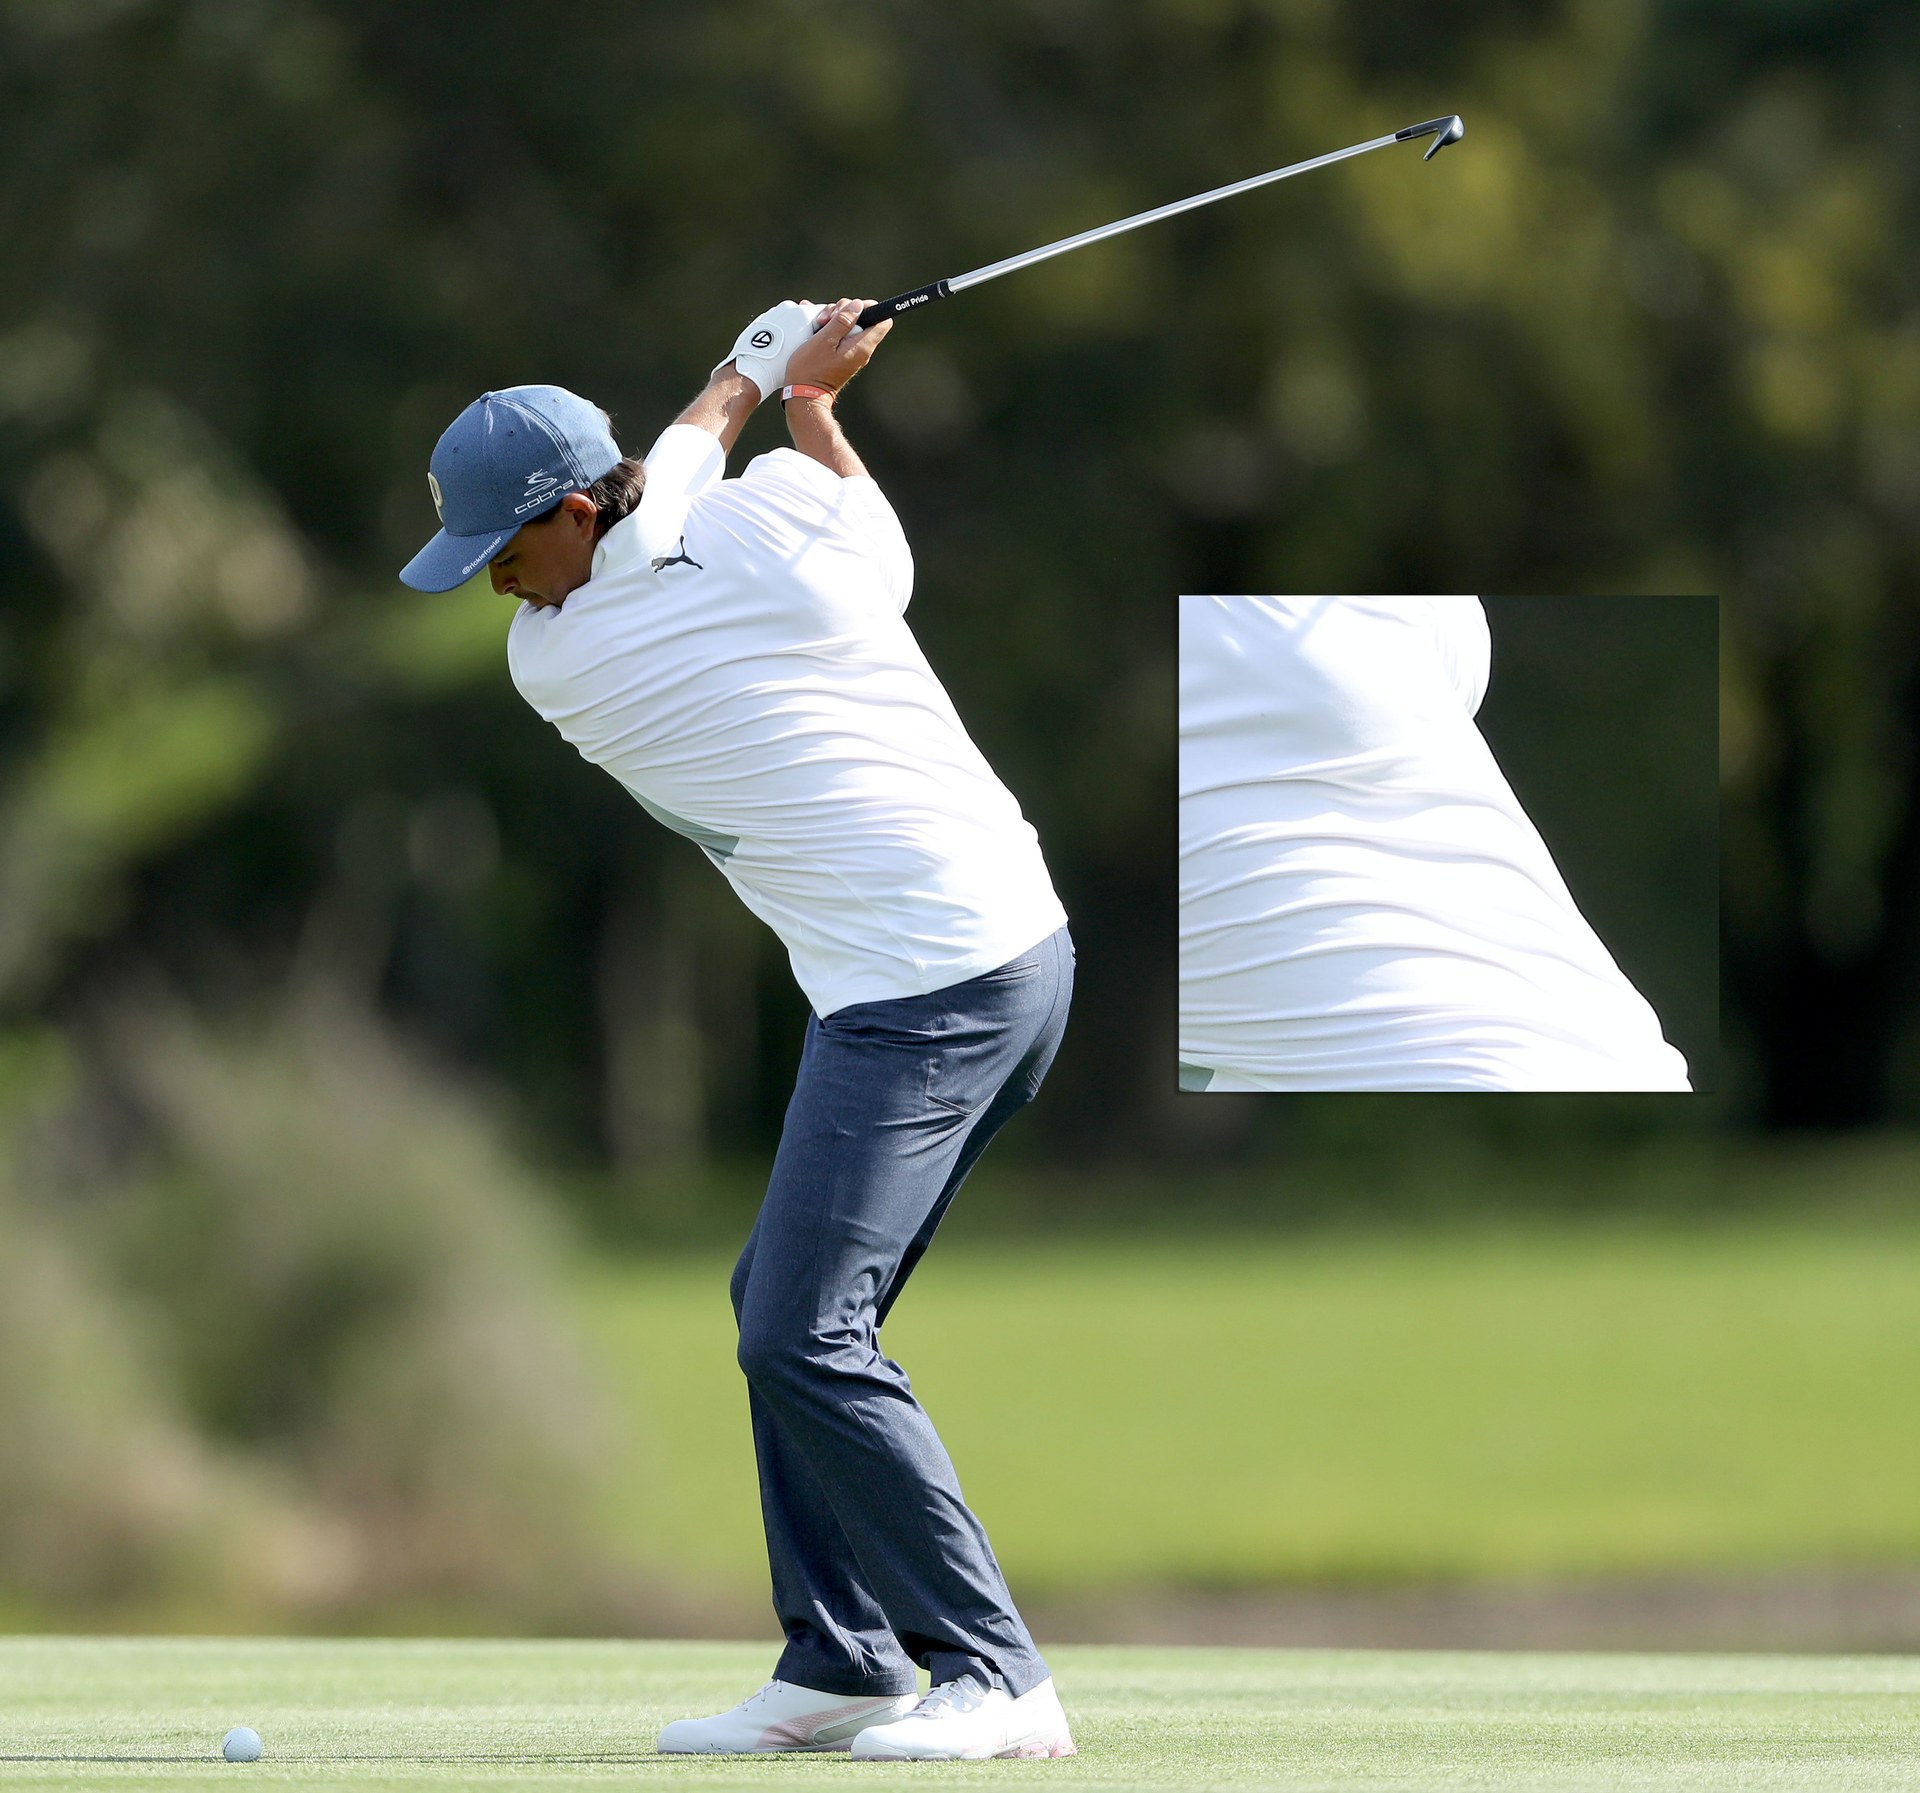 8 kinh nghiệm rút ra từ thế swing của golfer chuyên nghiệp